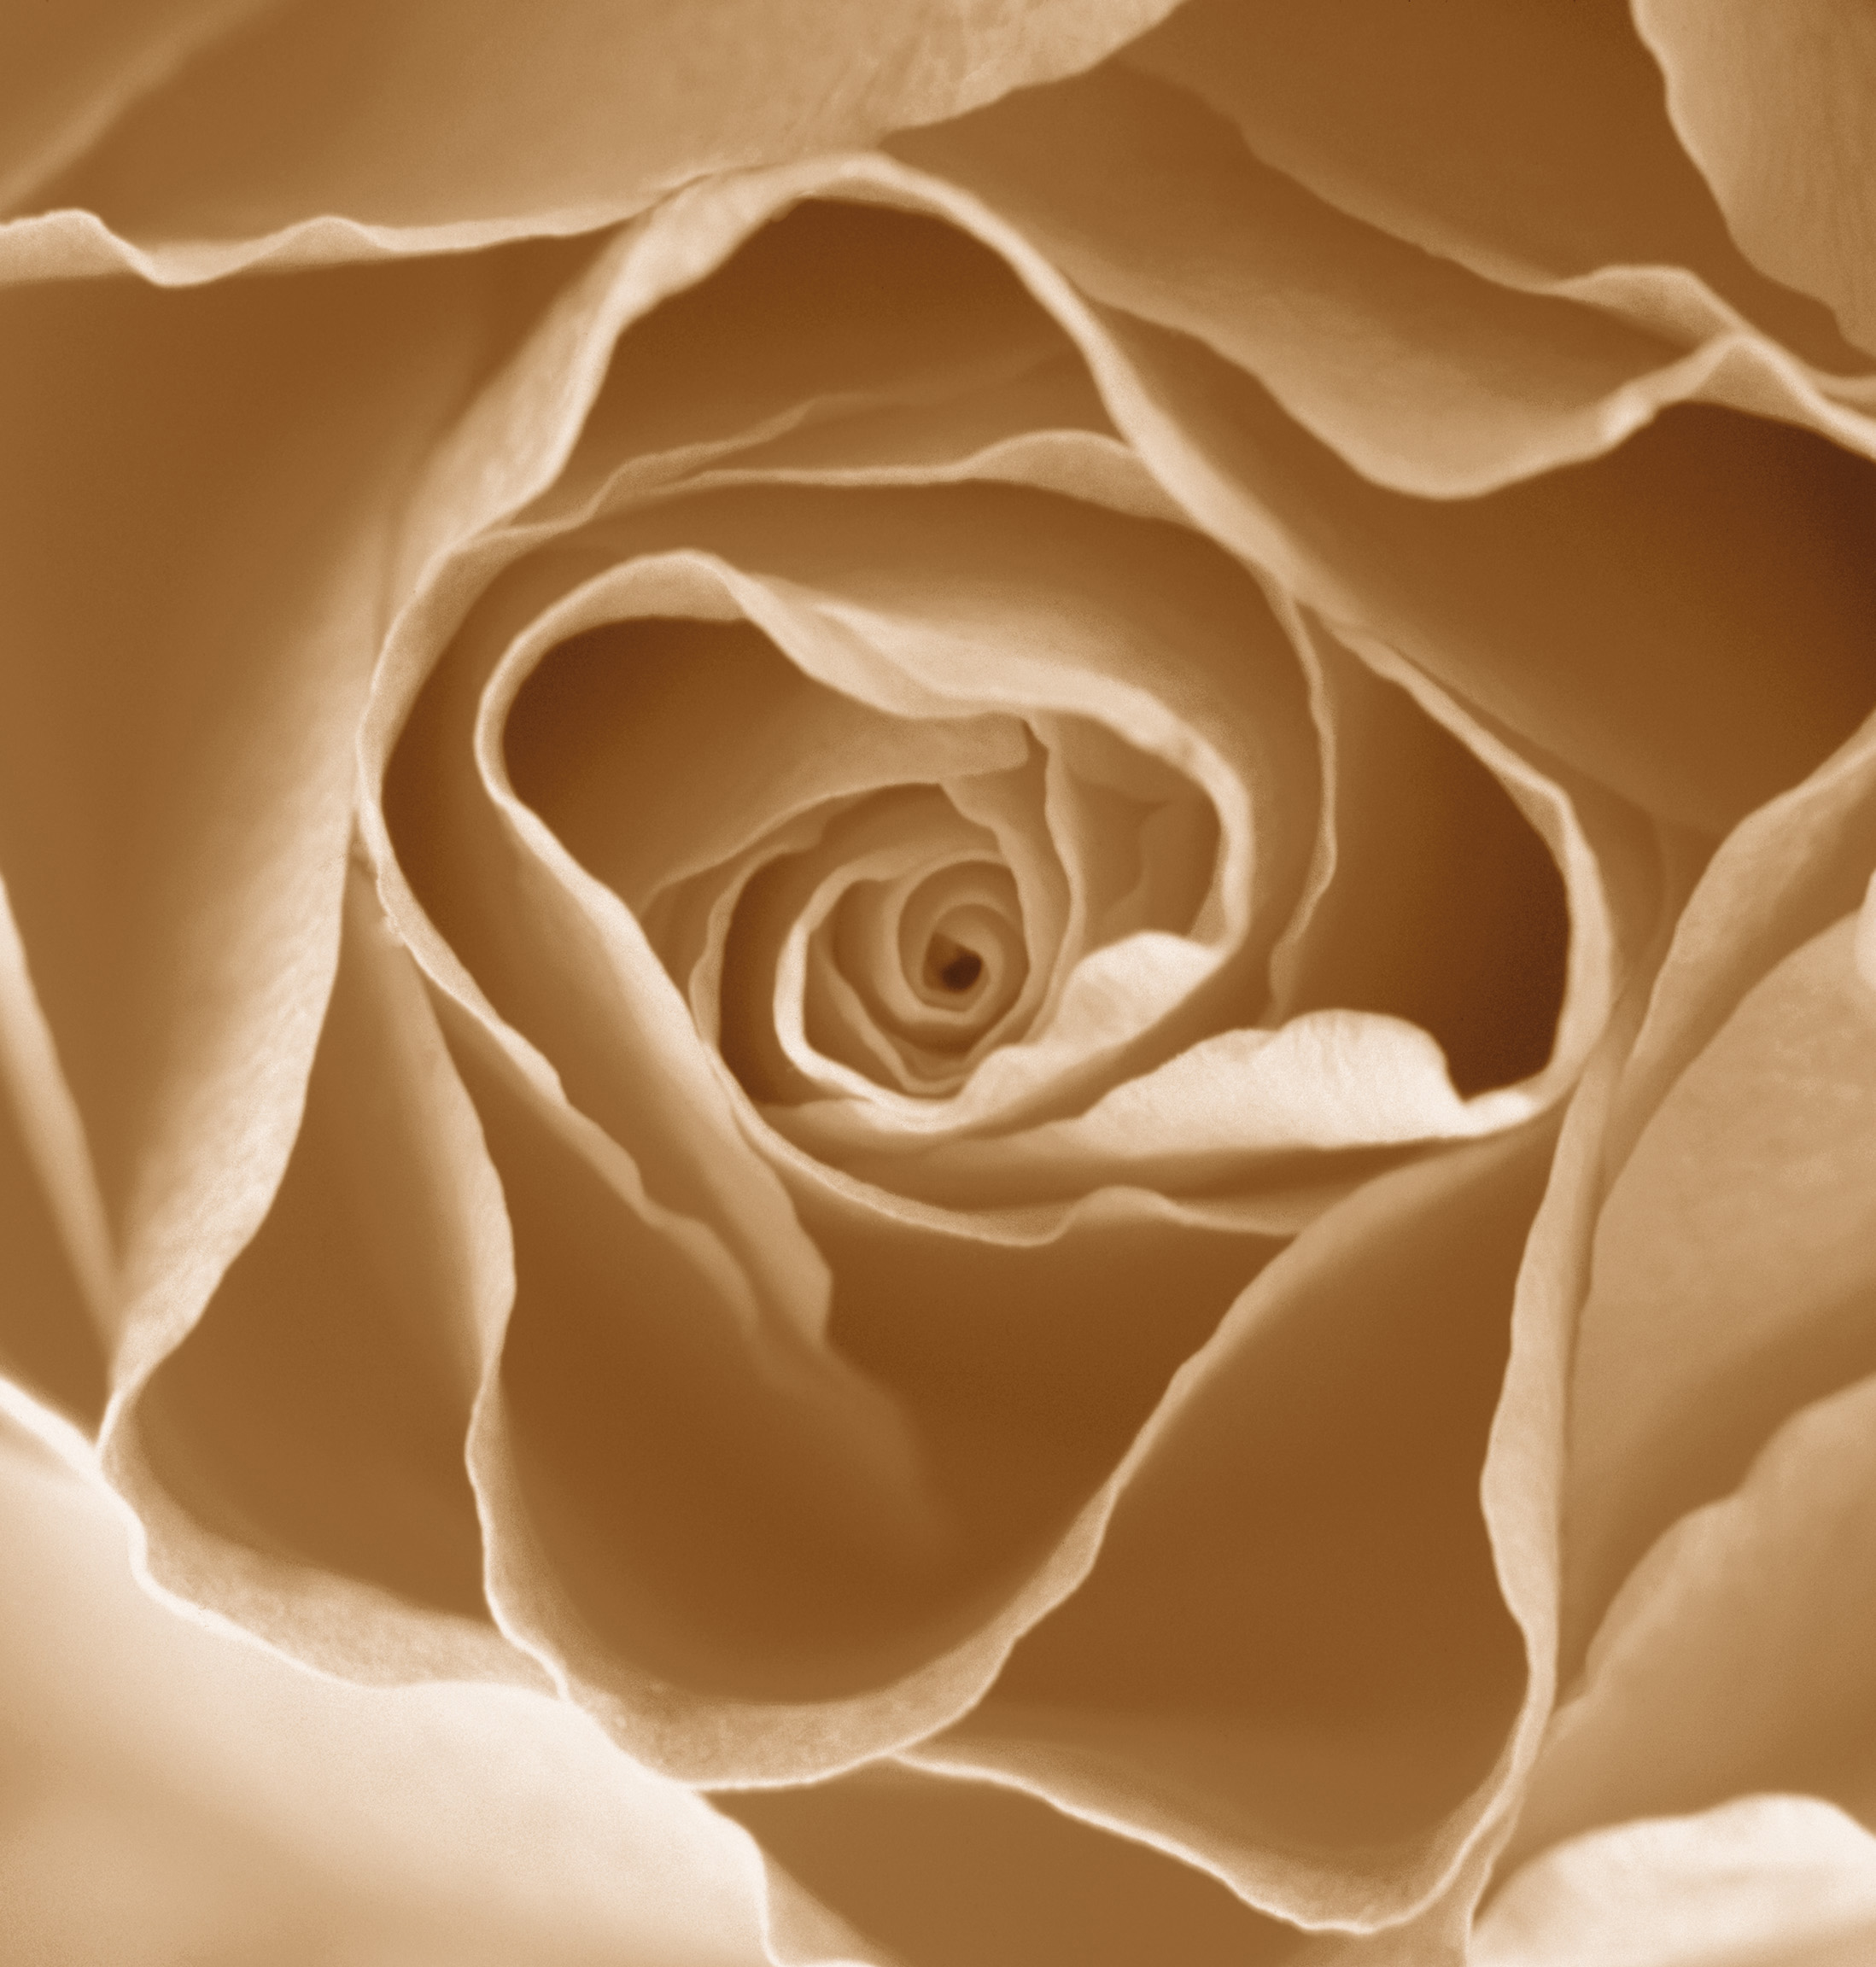 Centre of a Rose I